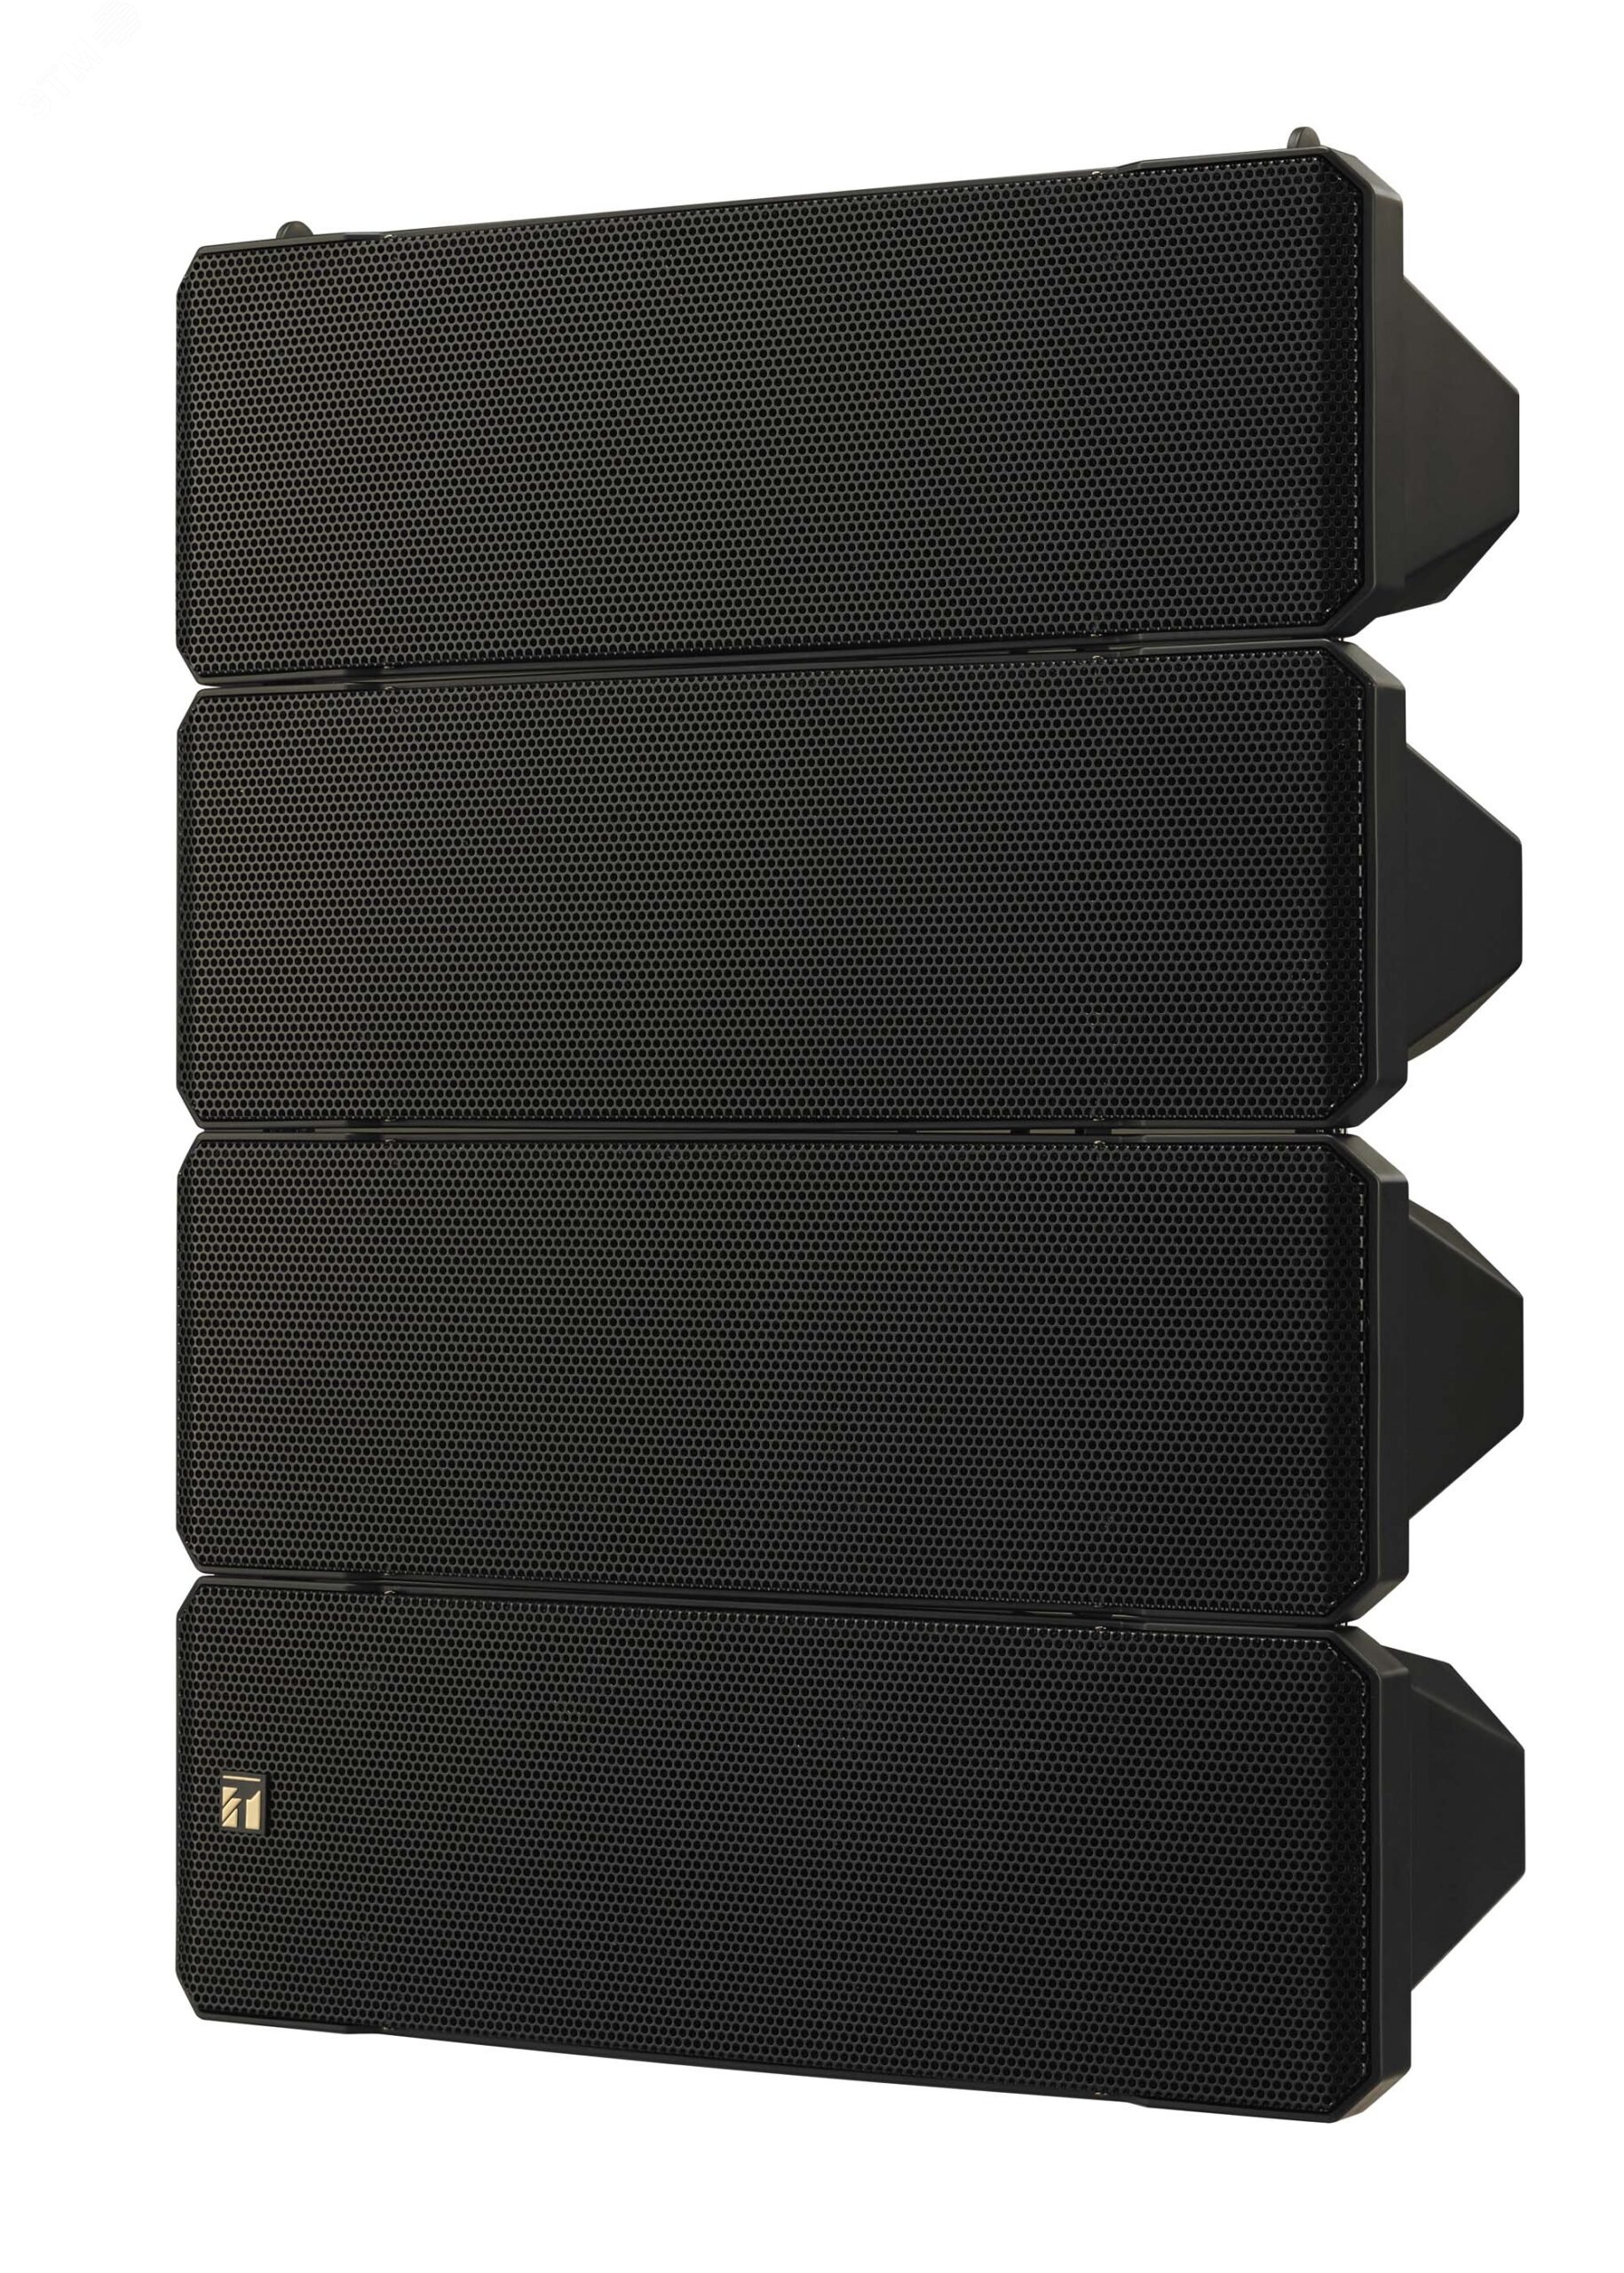 Система акустическая 2-полосная 4-секционный линейный массив с регулируемой направленностью по вертикали, 350/700 Вт, 8 Ом, 75-20 000 Гц, 100 дБ (1Вт/1м), цвет черный корпус с защитой IPX4 HX-7B-WP TOA